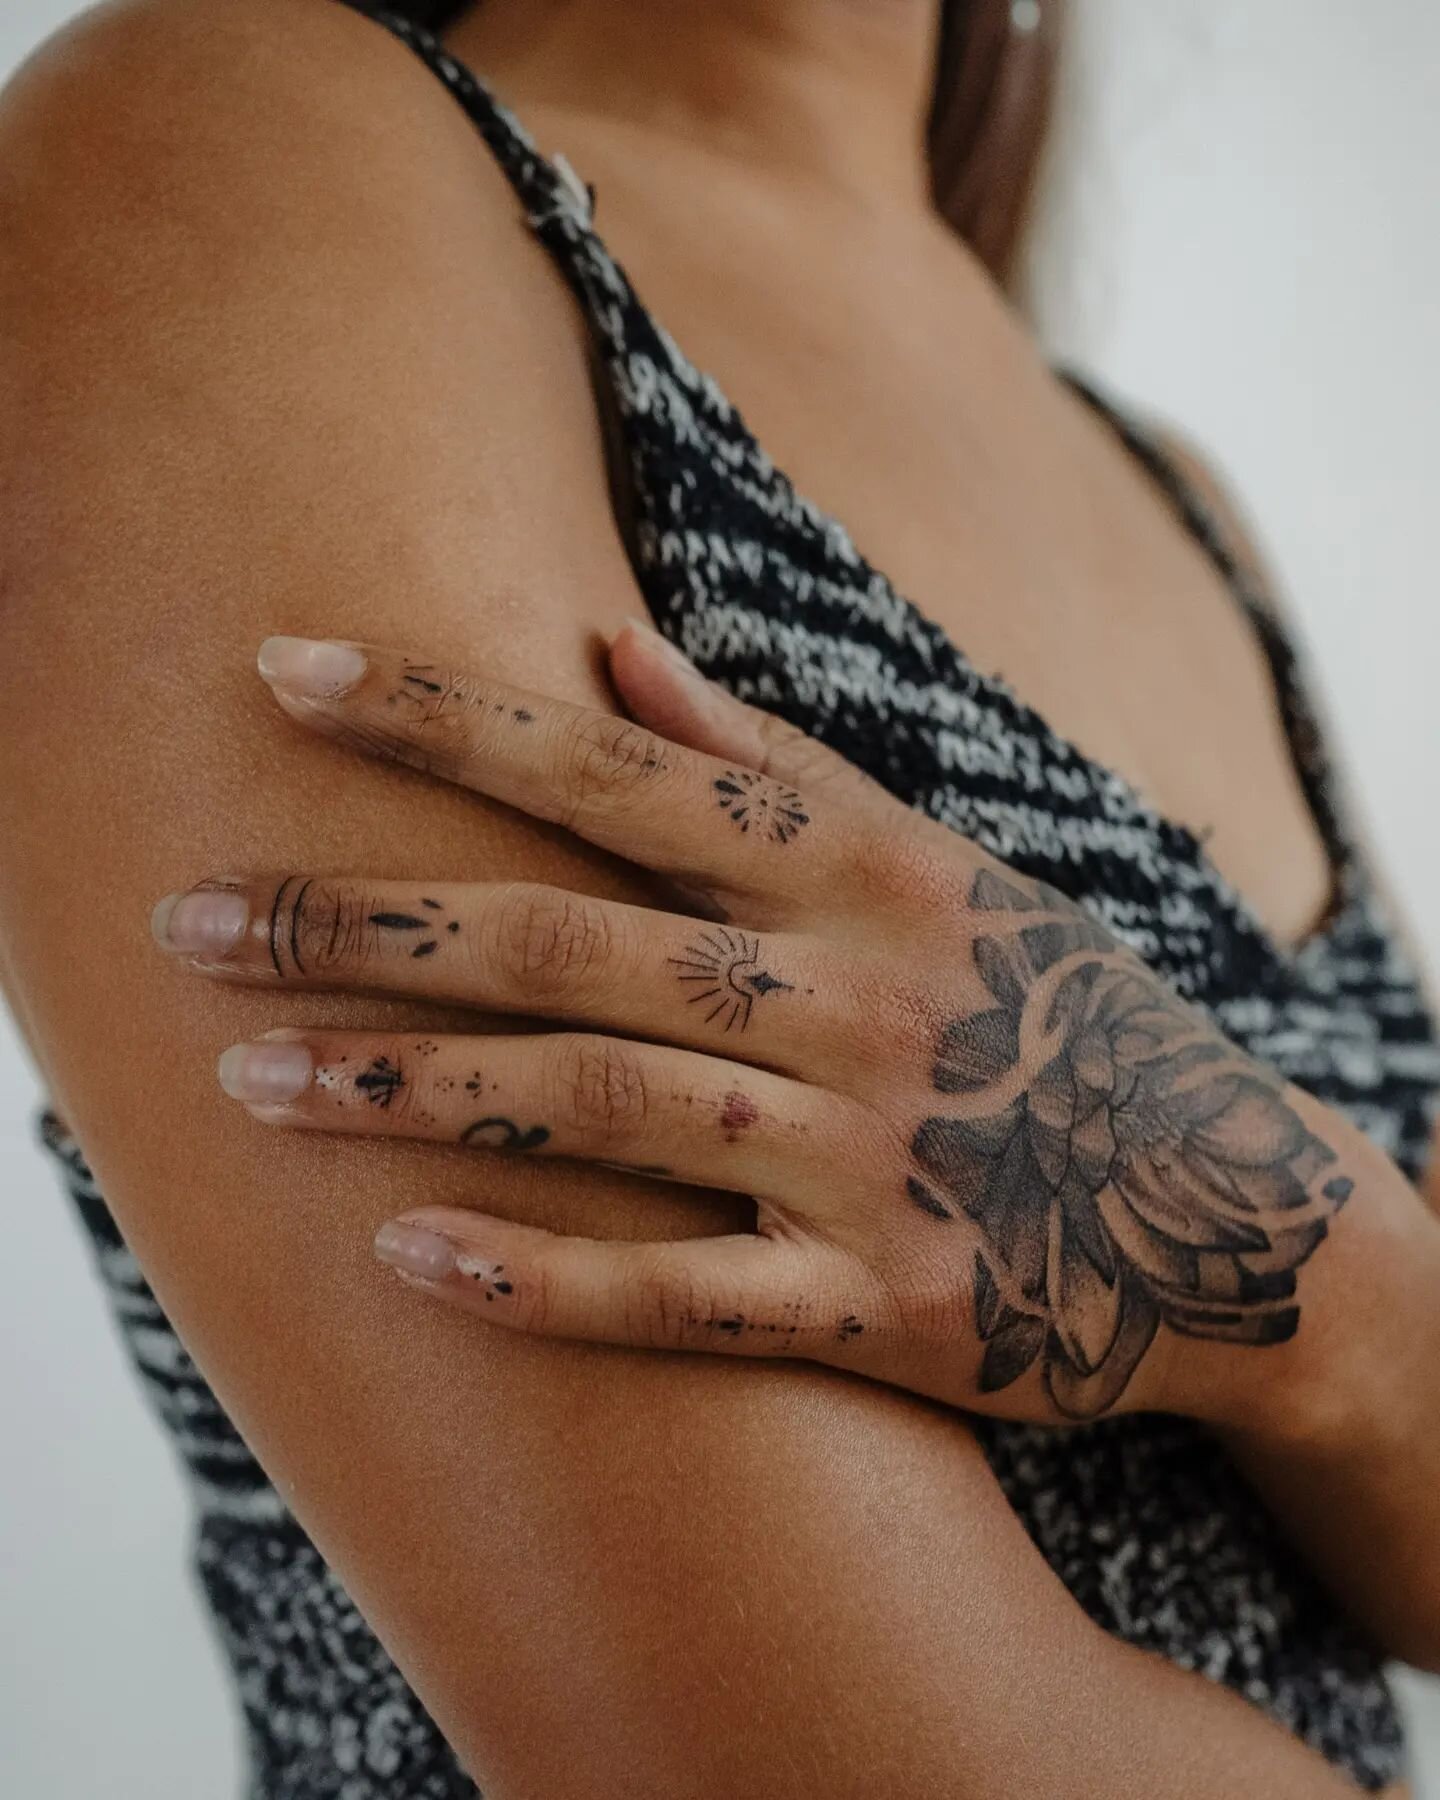 Hands *booking form in bio*
 
.
.
.

#handtattoo #tattoo #tattoos #inked #ink #tattooed #art #tattooartist #sleevetattoo #instatattoo #tattooart #bodyart #inkedup #chesttattoo #tattoist #tatts #tatted #tat #instagood #instaart #tattoolife #tats #amaz